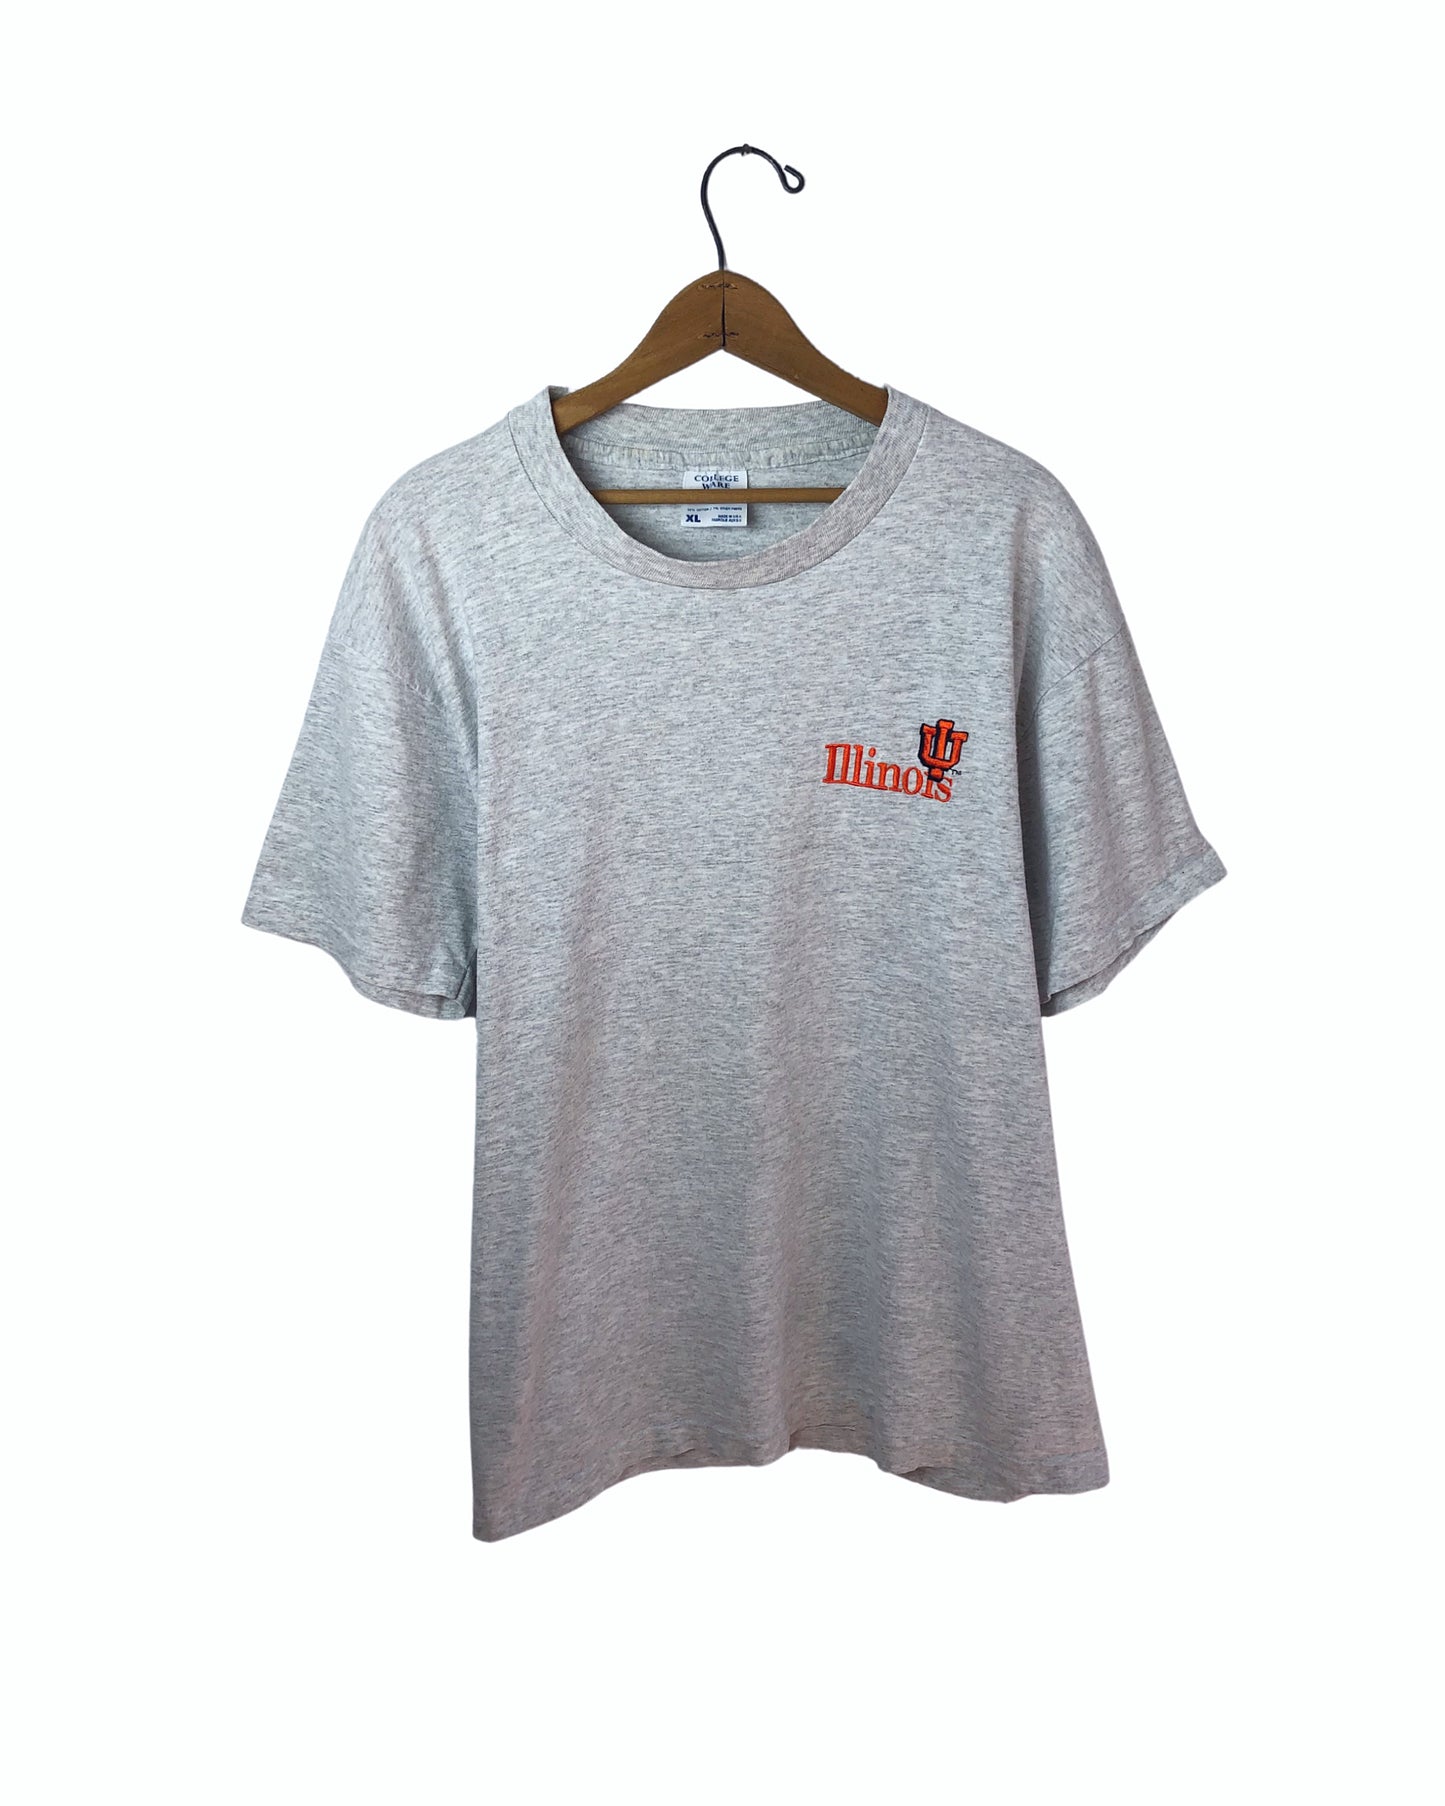 Vintage 90’s Fighting Illini University of Illinois 100% Cotton T-Shirt